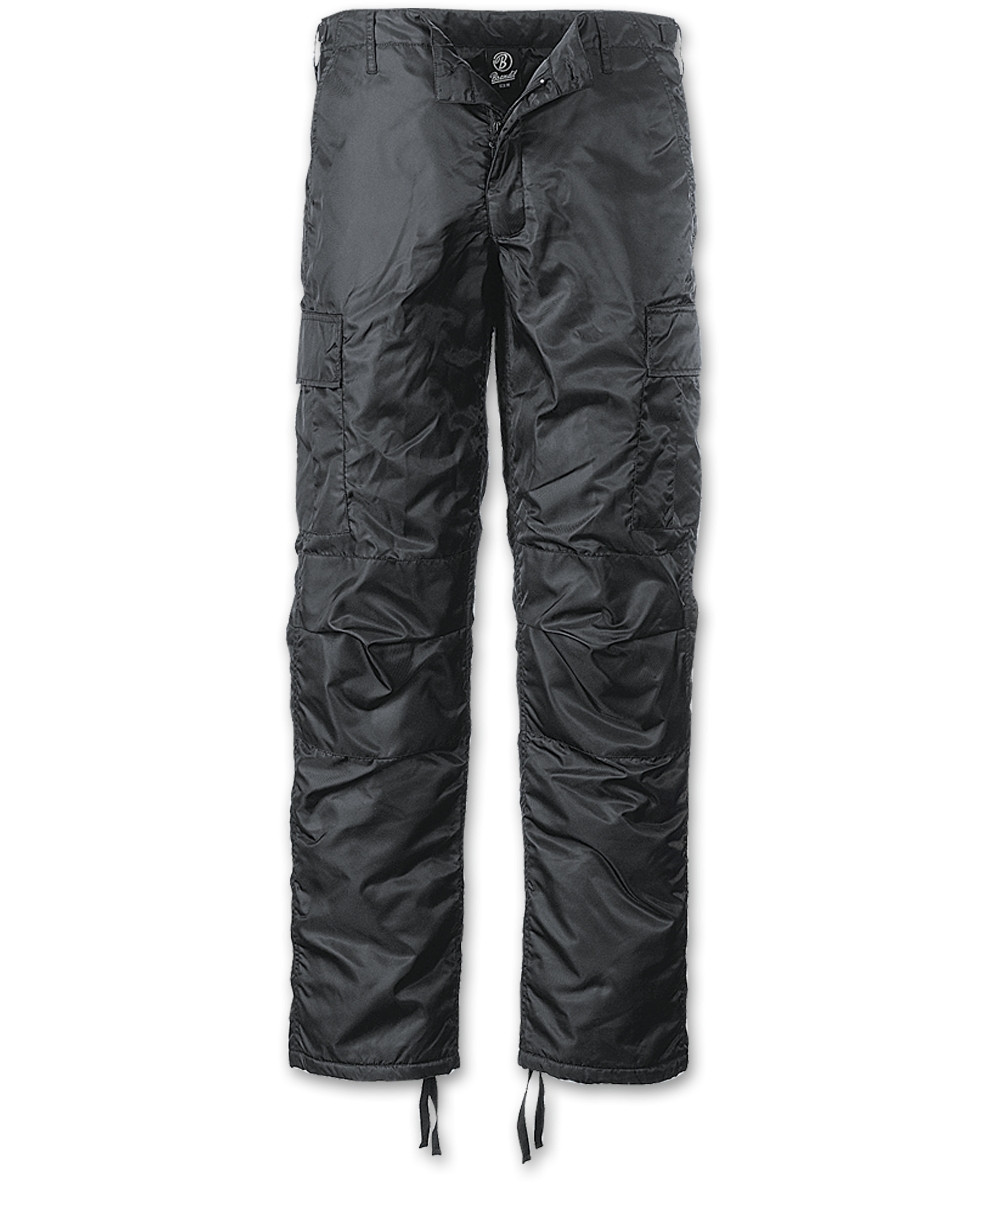 Kalhoty Brandit MA1 Thermo - černé, 3XL